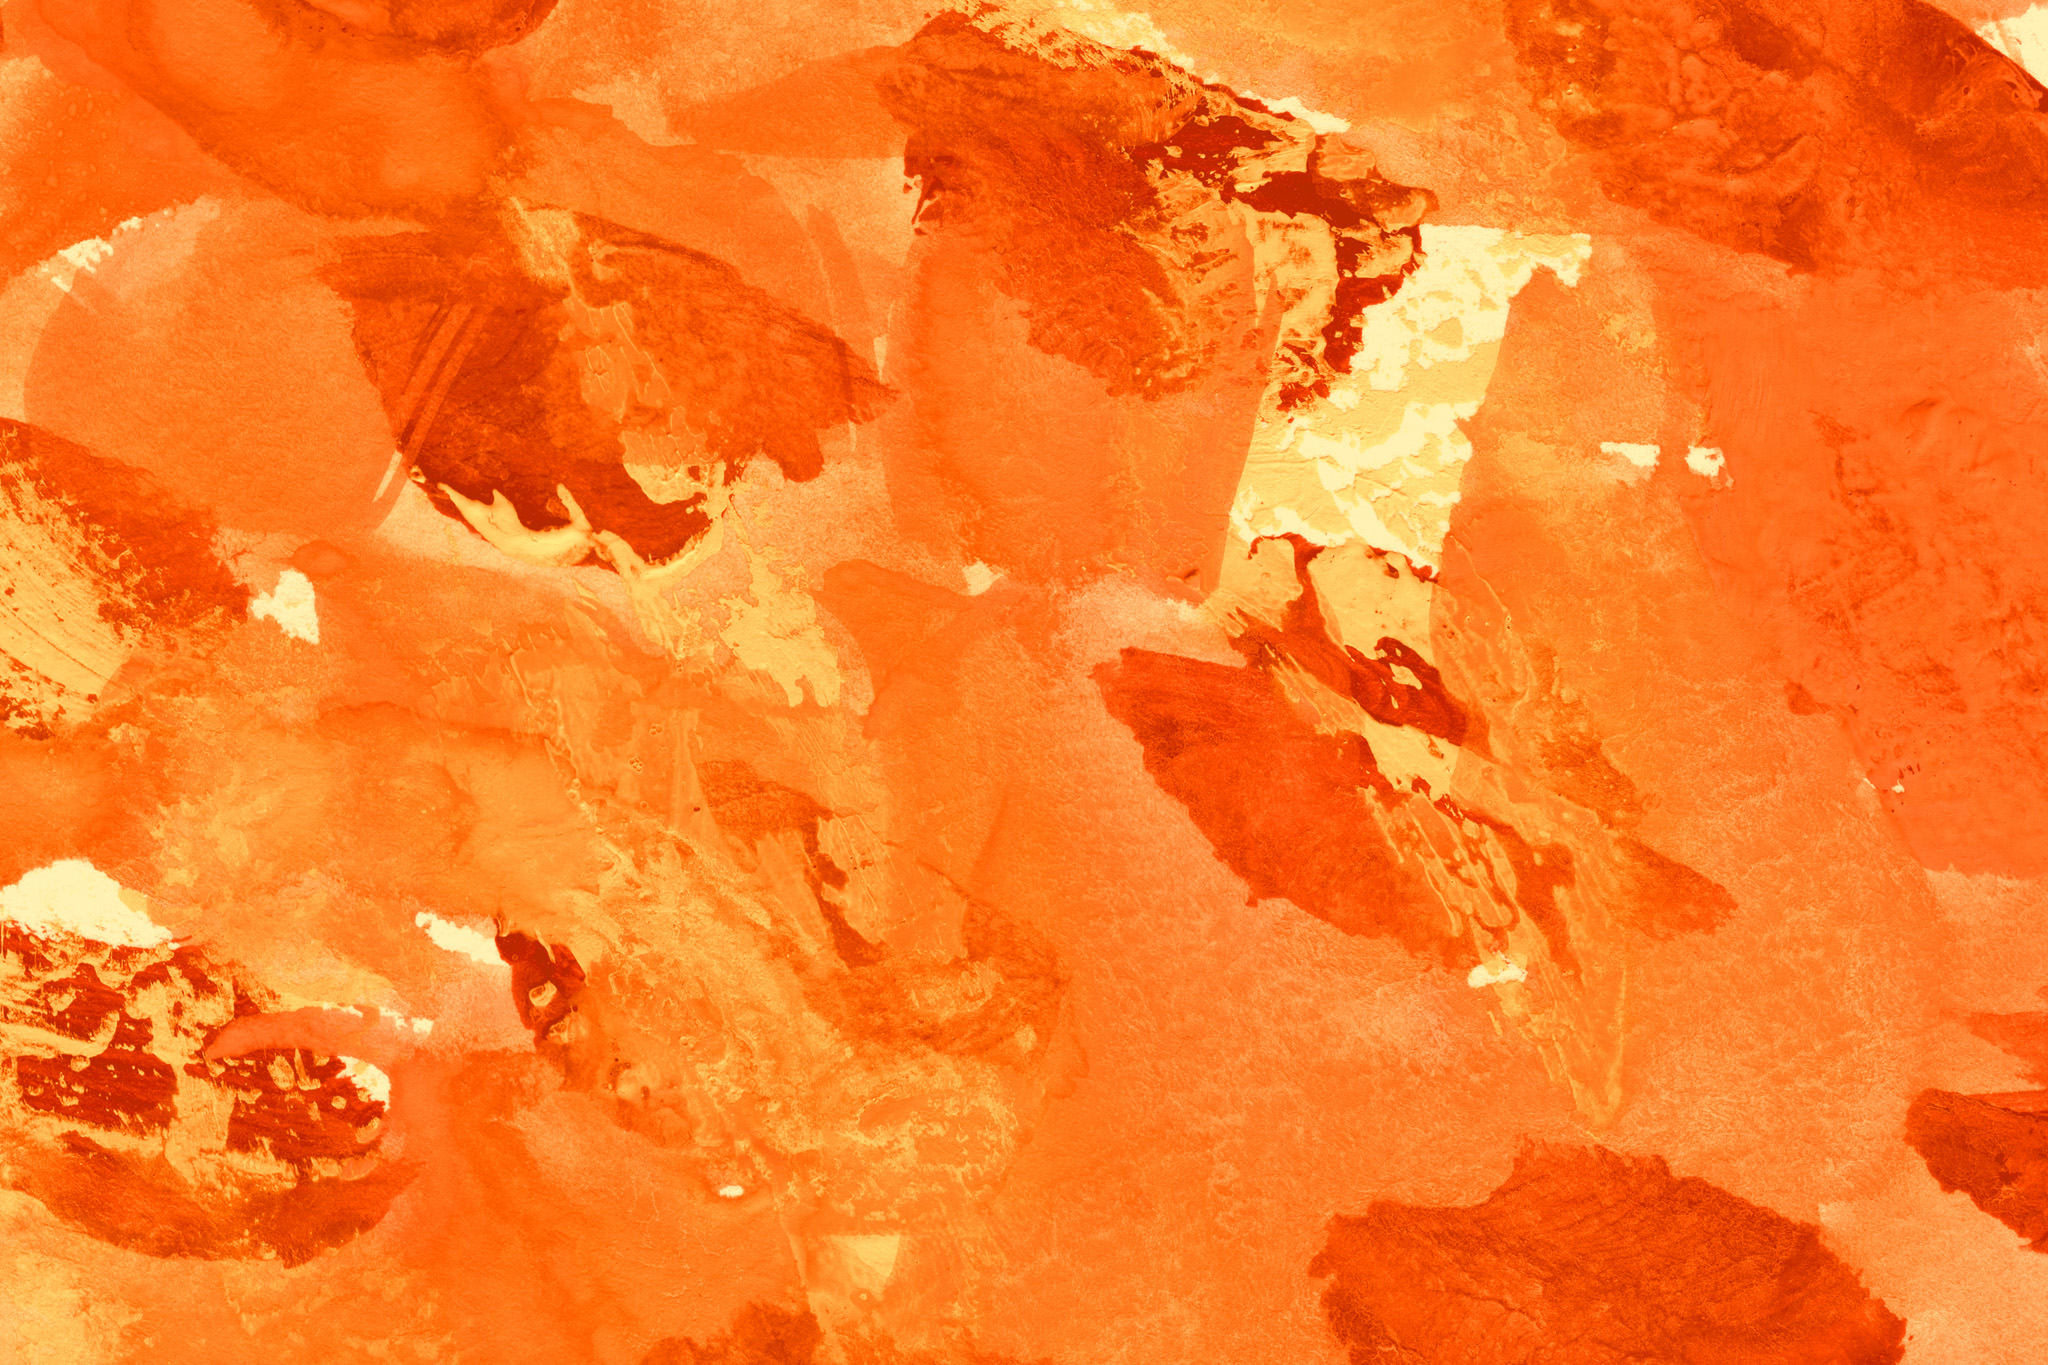 背景がオレンジのフリー素材 の画像素材を無料ダウンロード 1 背景フリー素材 Beiz Images